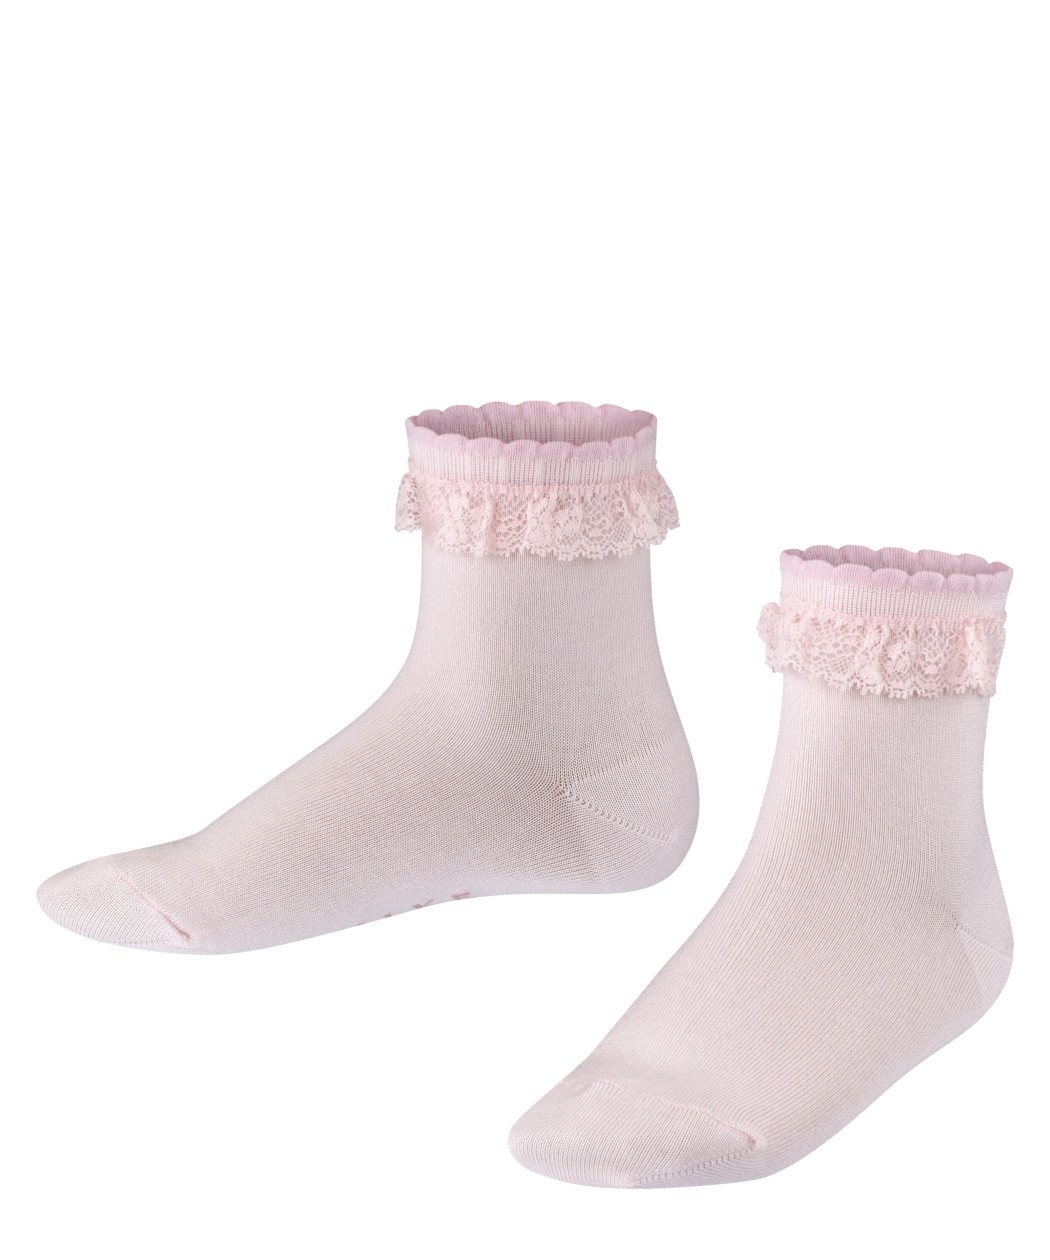 2er Pack Falke Romantic Lace Kinder Socken